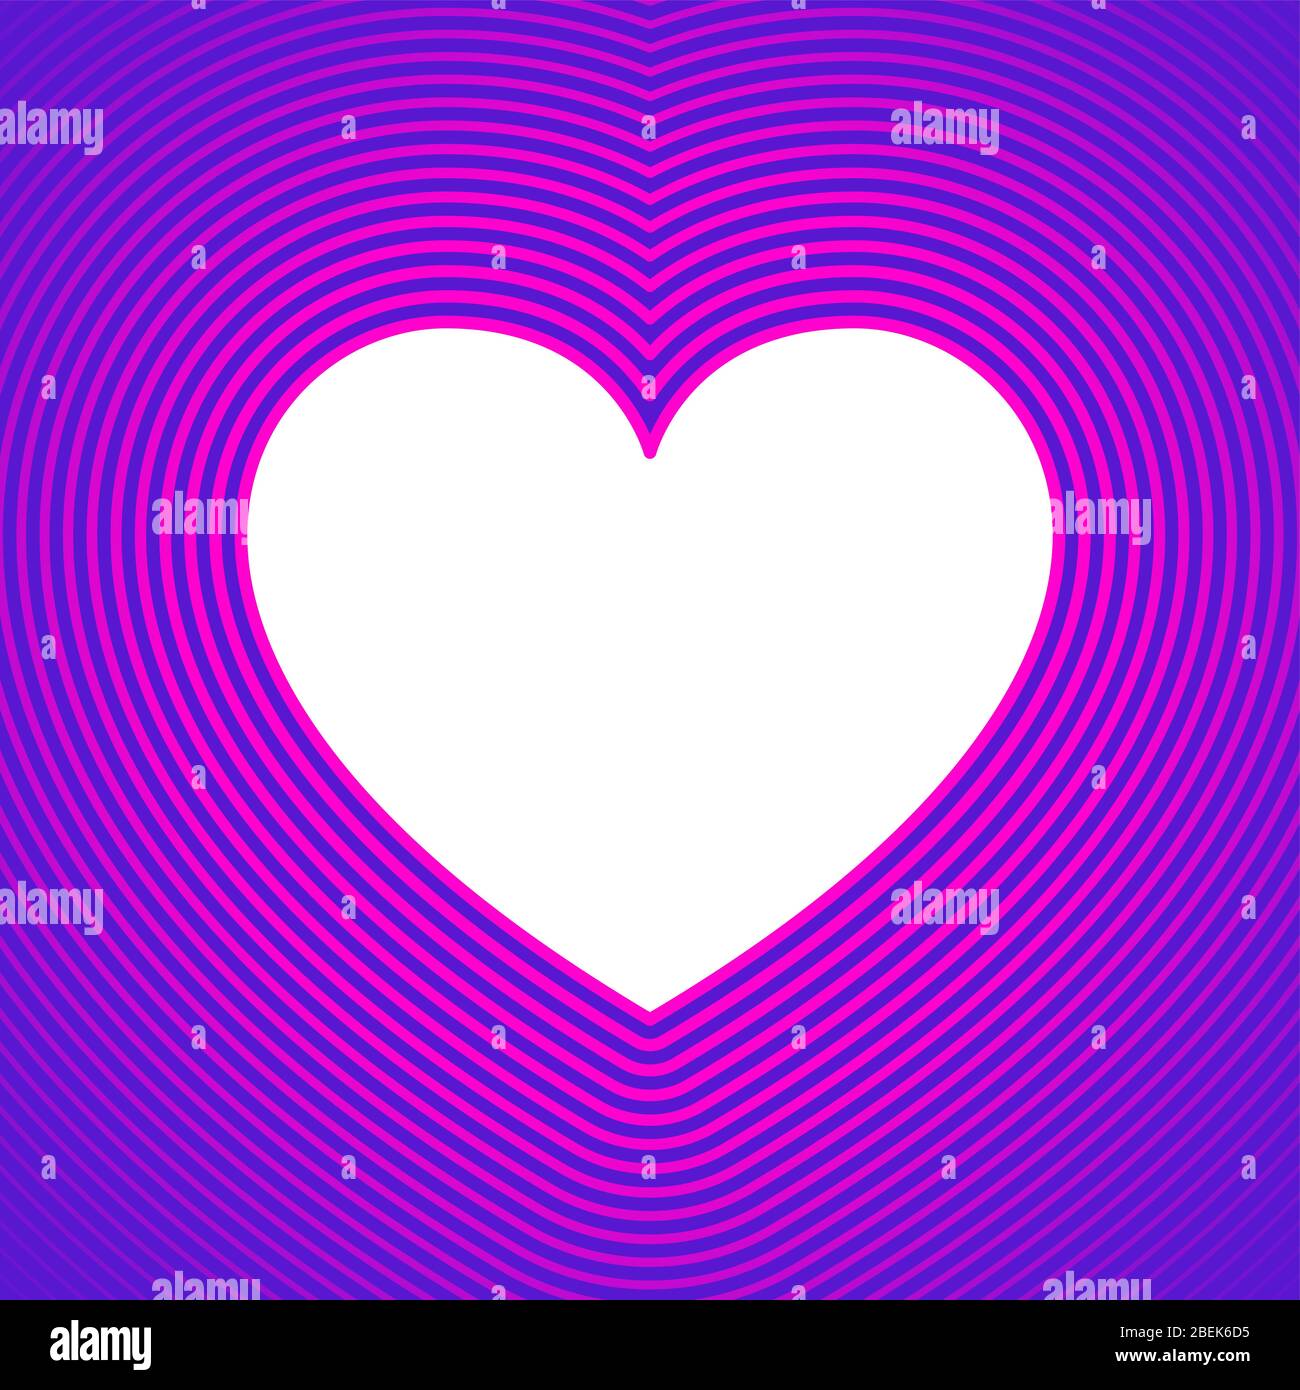 Weißes Herz-Symbol mit rosa Offset-Linien auf lila Hintergrund.Vorlage für den Einsatz als Hintergrund oder für eine Grußkarte. Herzform zum Ausdruck bringen Emotion Stockfoto